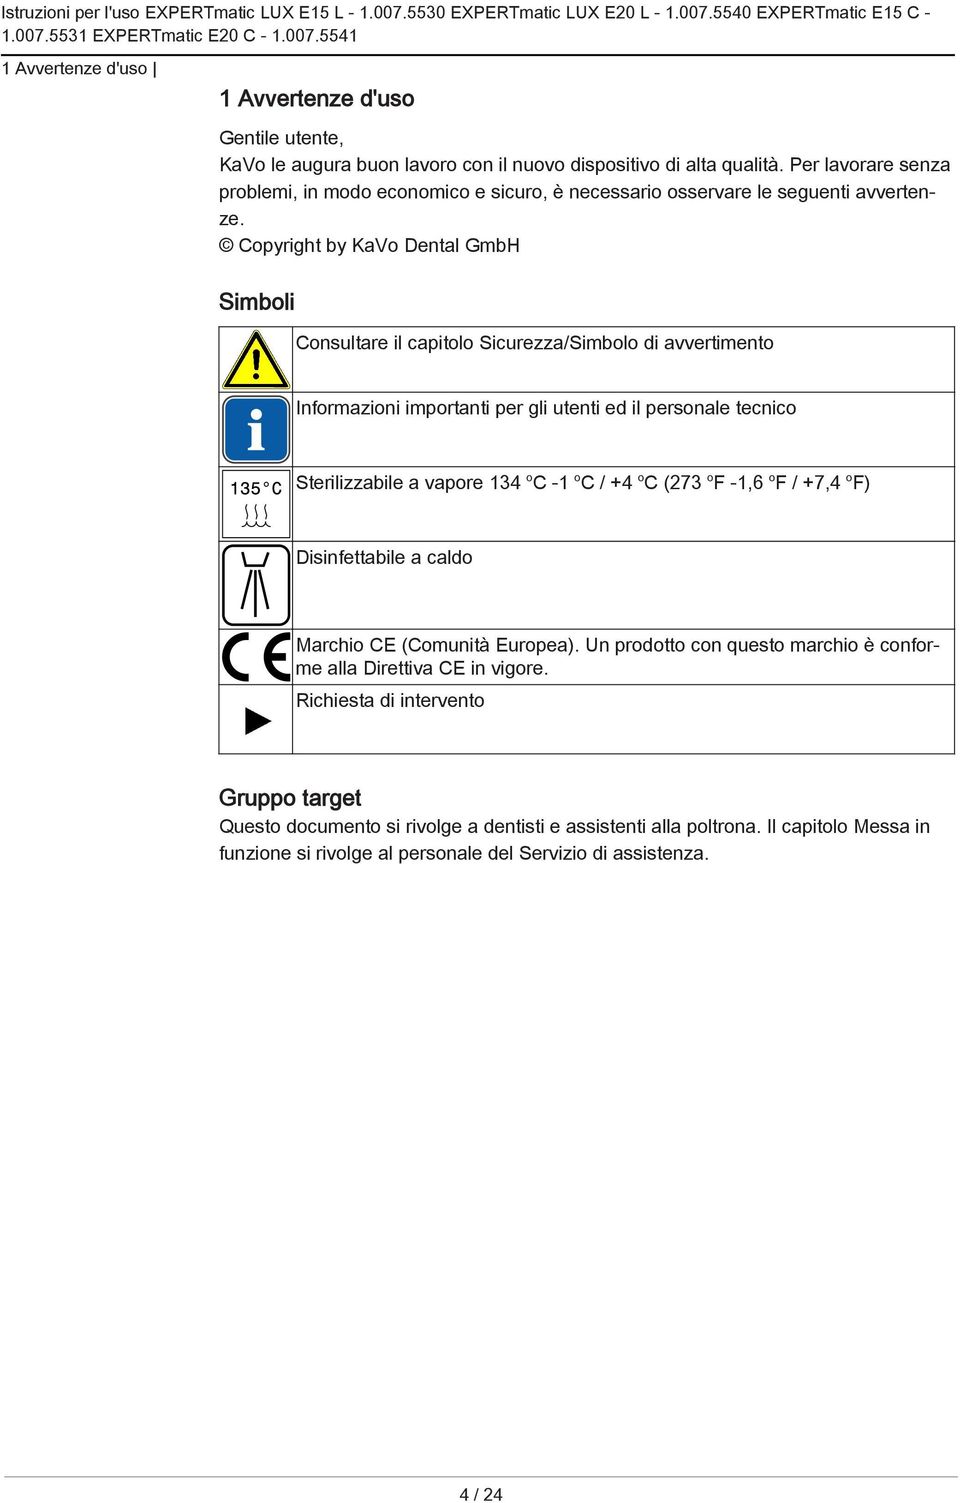 Copyright by KaVo Dental GmbH Simboli Consultare il capitolo Sicurezza/Simbolo di avvertimento Informazioni importanti per gli utenti ed il personale tecnico Sterilizzabile a vapore 134 o C -1 o